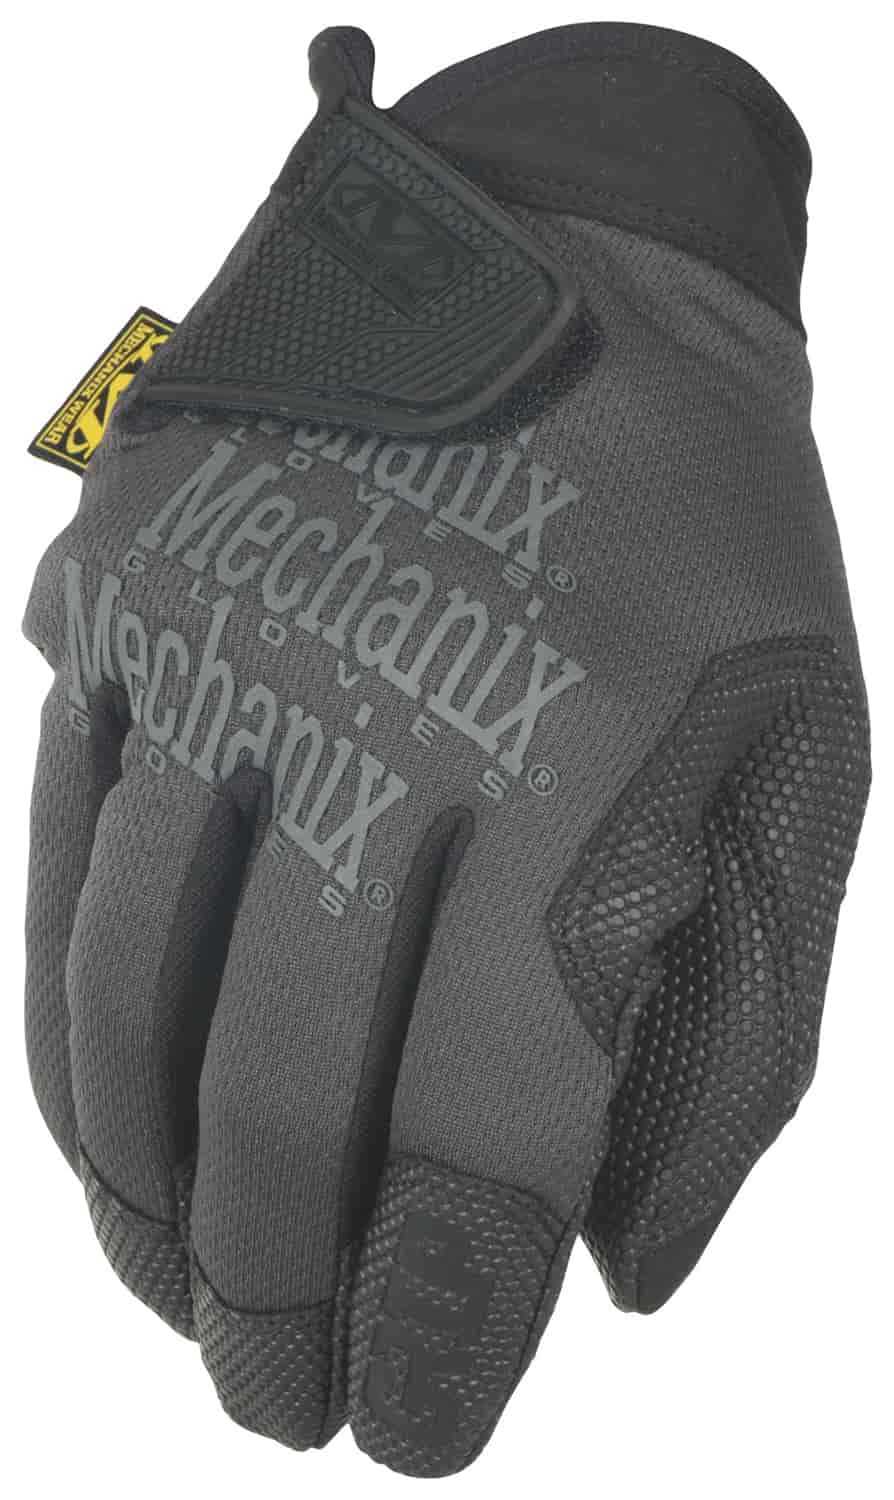 Mechanix Wear Specialty Grip Gloves